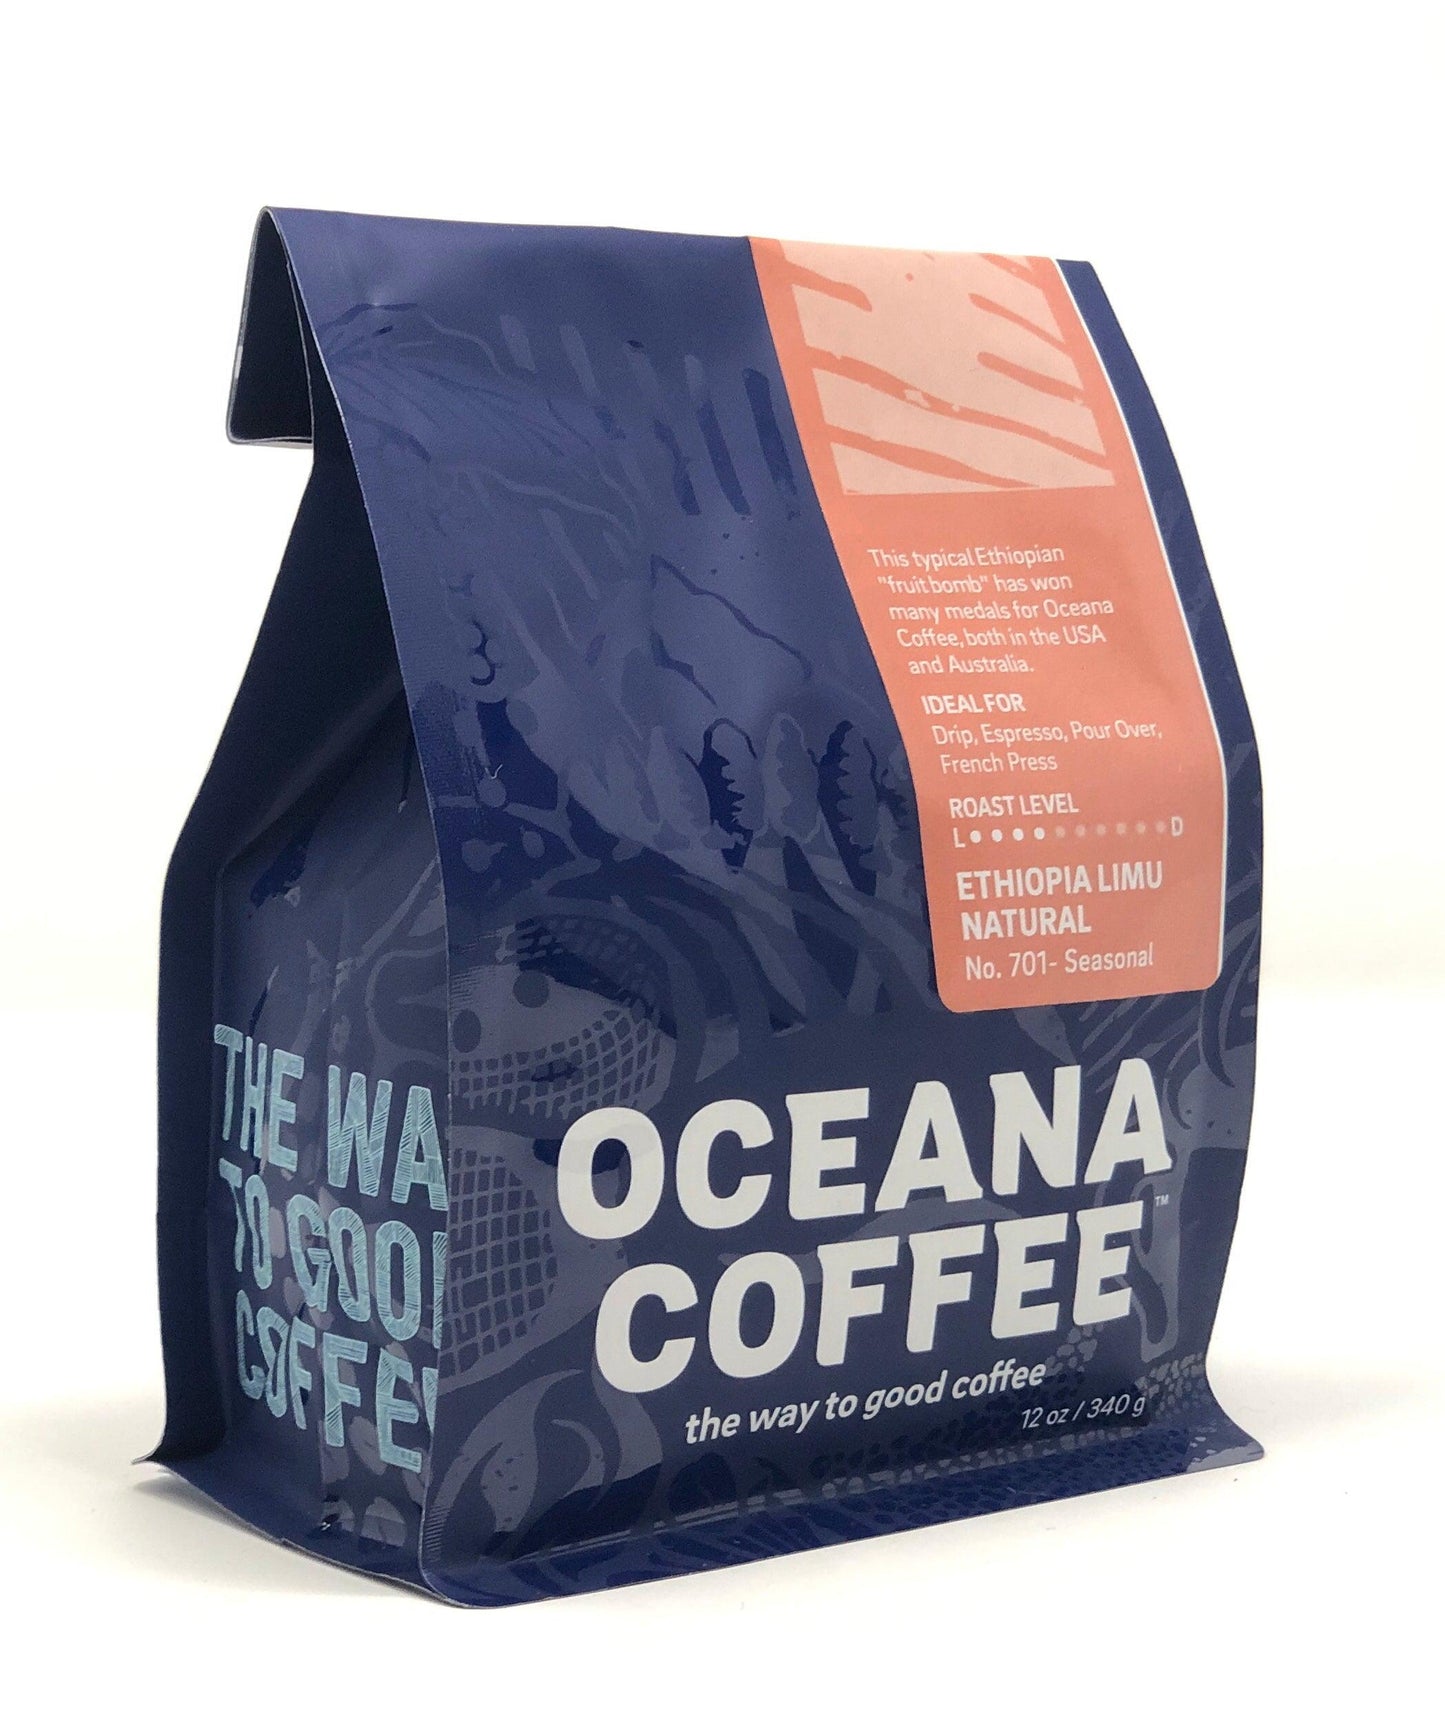 Ethiopia Limu Natural - Light Medium Roast - Oceana Coffee 2022